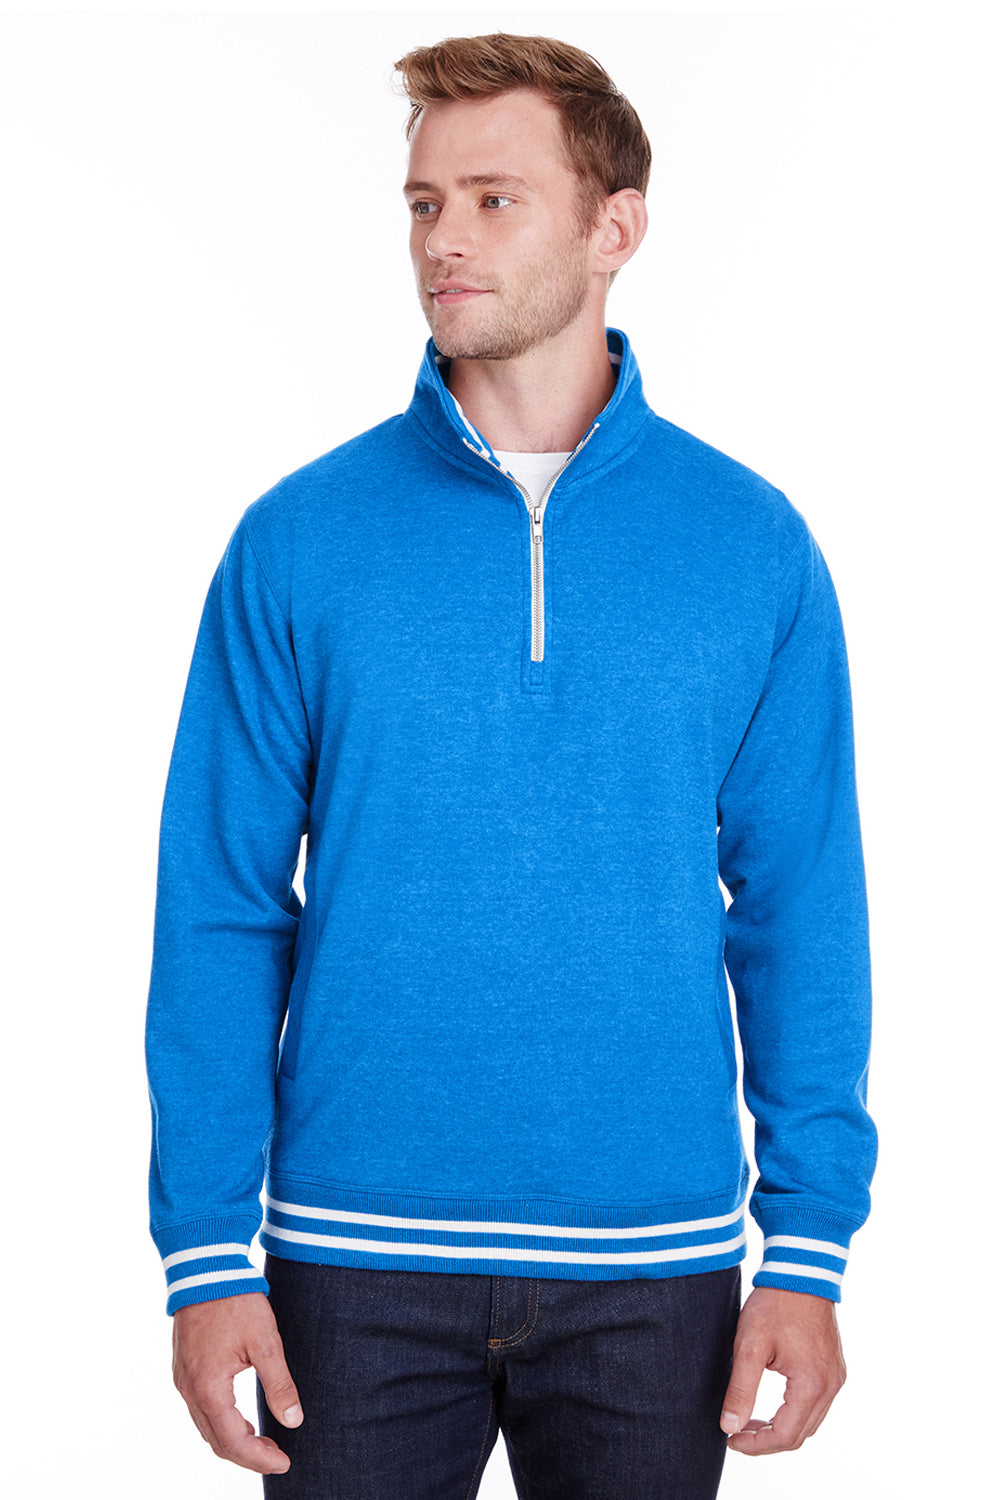 J America JA8650 Mens Relay Fleece 1/4 Zip Sweatshirt Royal Blue Front